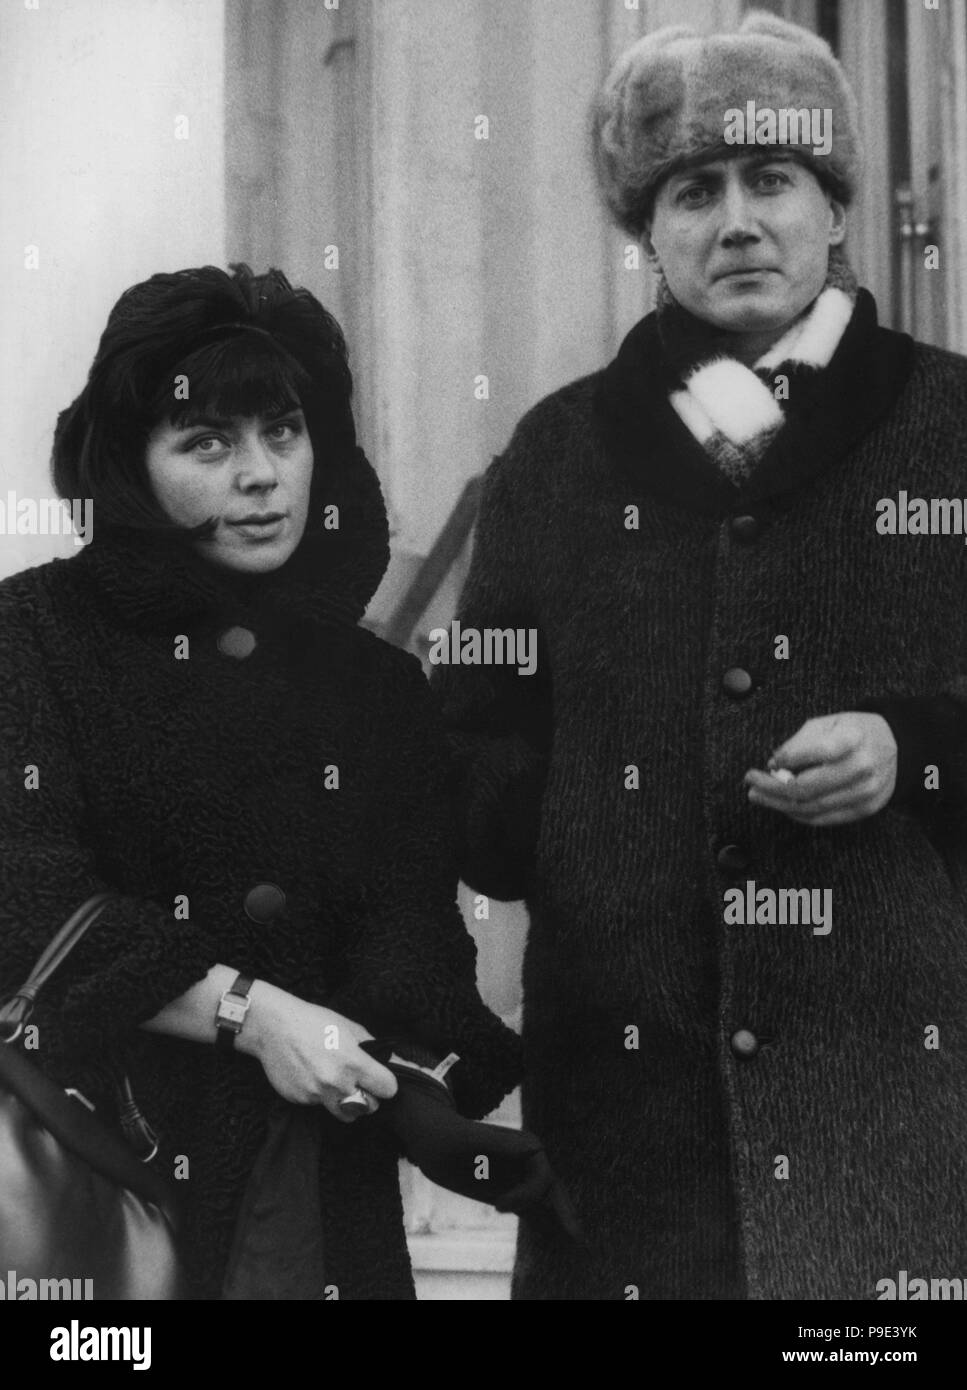 Jewgenij Yevtushenko (1933-2017), escritor y poeta soviético, de visita con su esposa a la ciudad de Hamburgo, República Federal de Alemania en 1963. Stock Photo